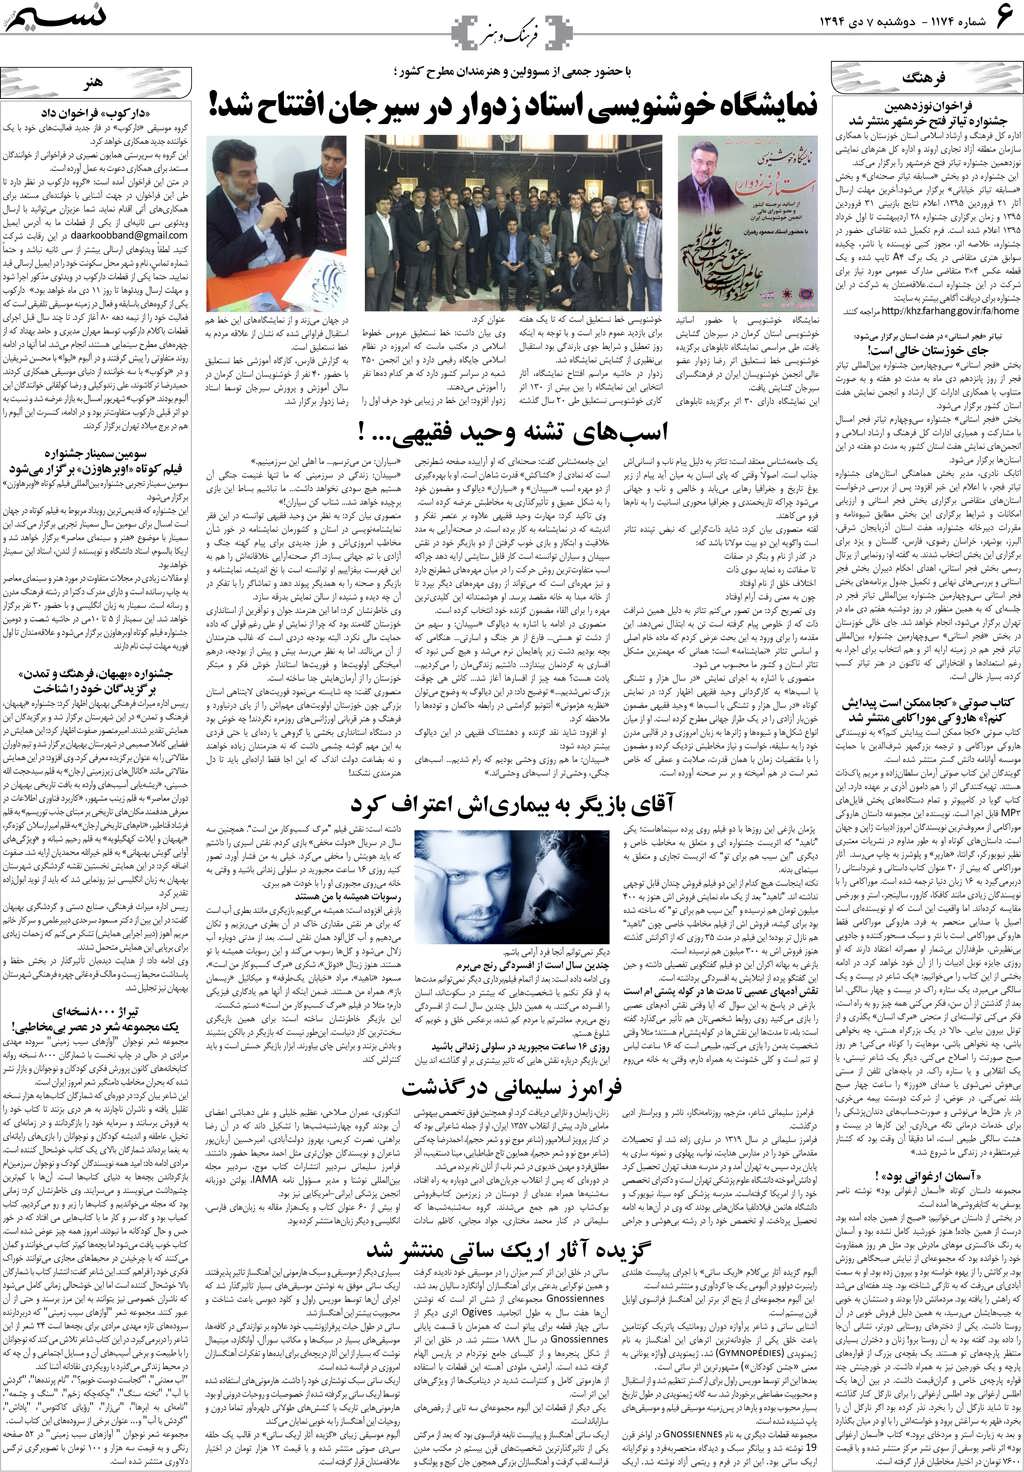 صفحه فرهنگ و هنر روزنامه نسیم شماره 1174